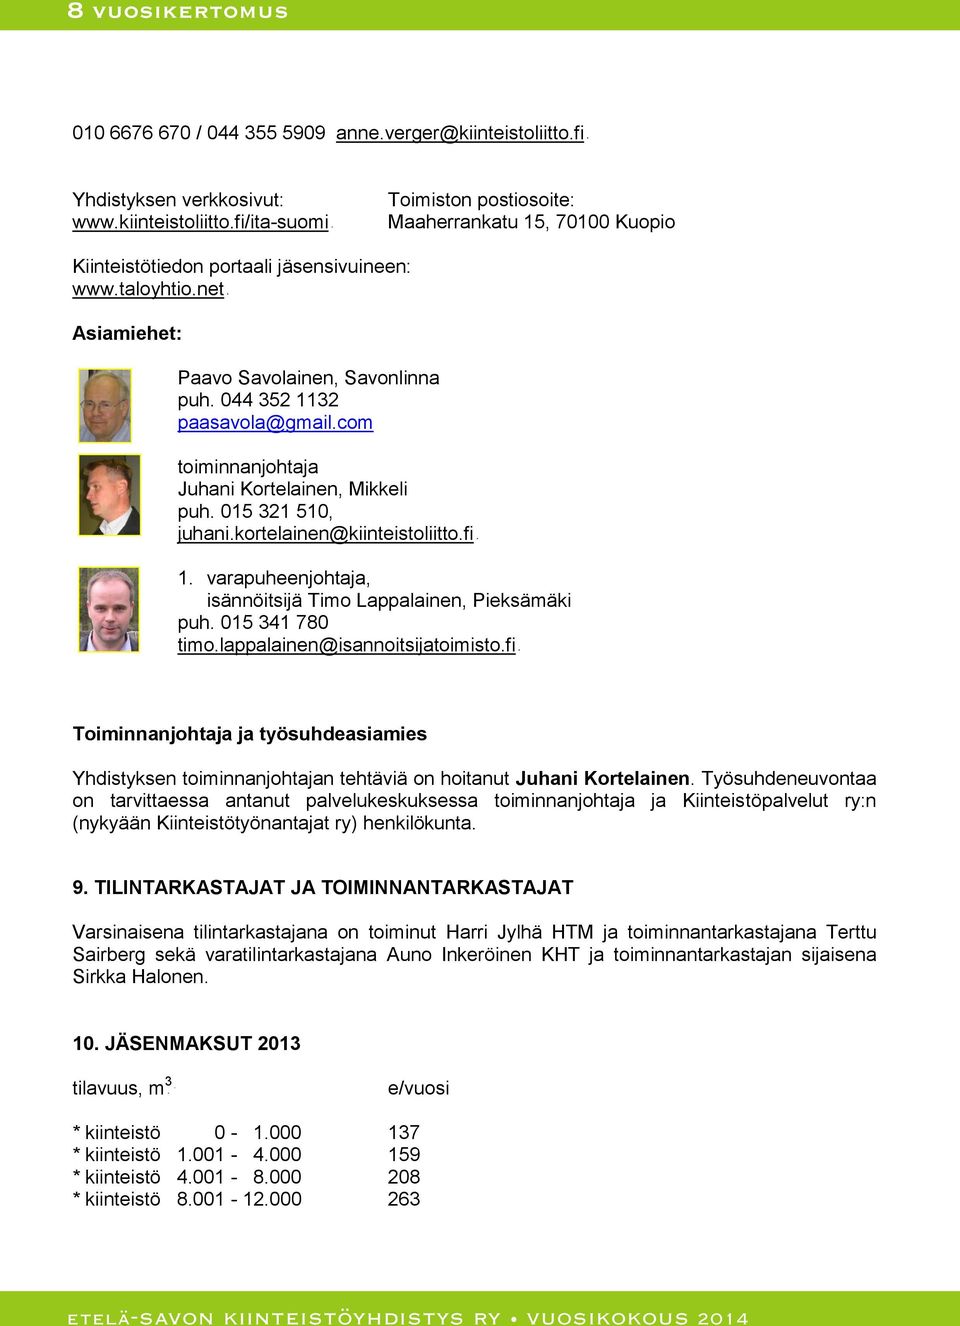 fiUTH 1. varapuheenjohtaja, isännöitsijä Timo Lappalainen, Pieksämäki puh. 015 341 780 THUtimo.lappalainen@isannoitsijatoimisto.